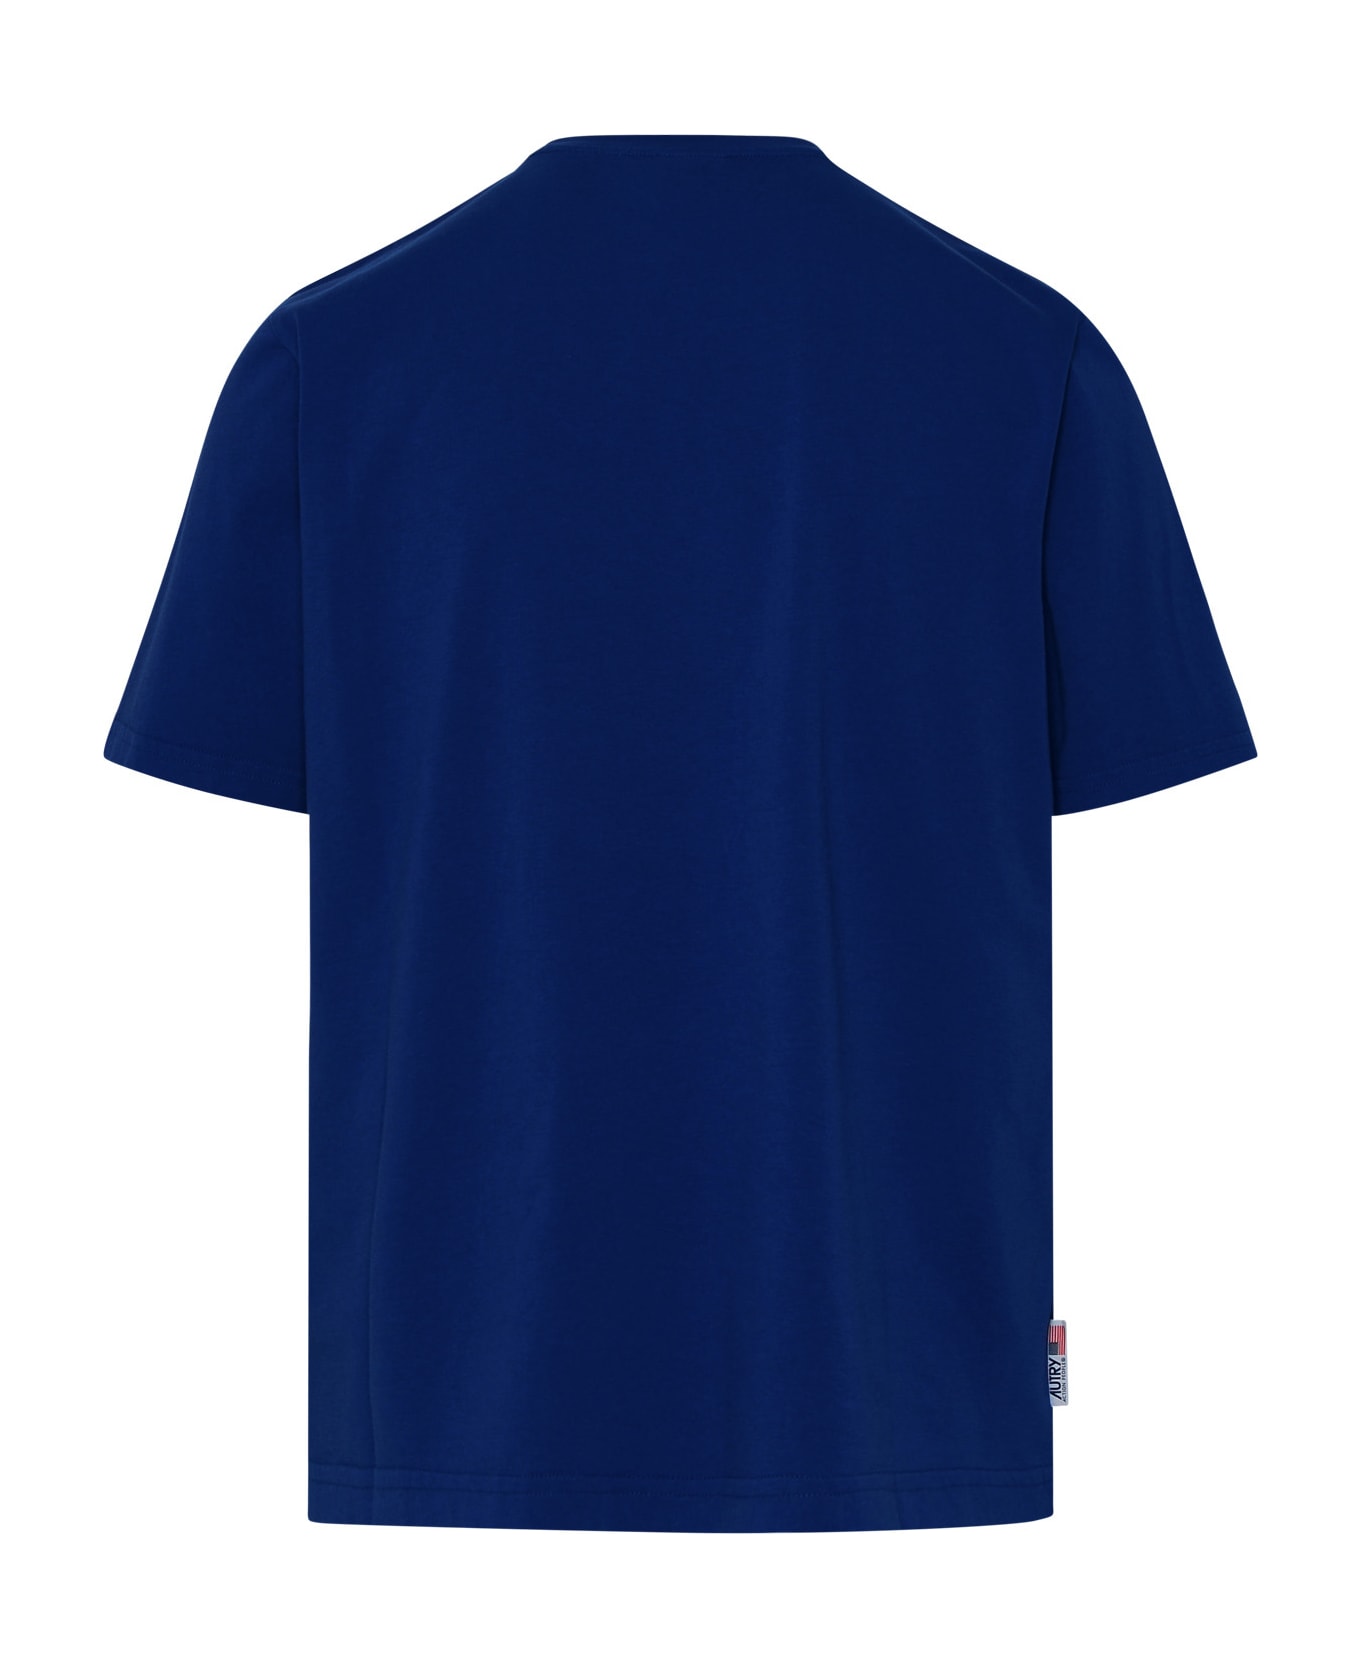 Autry Tennis Academy T-shirt - Blue シャツ